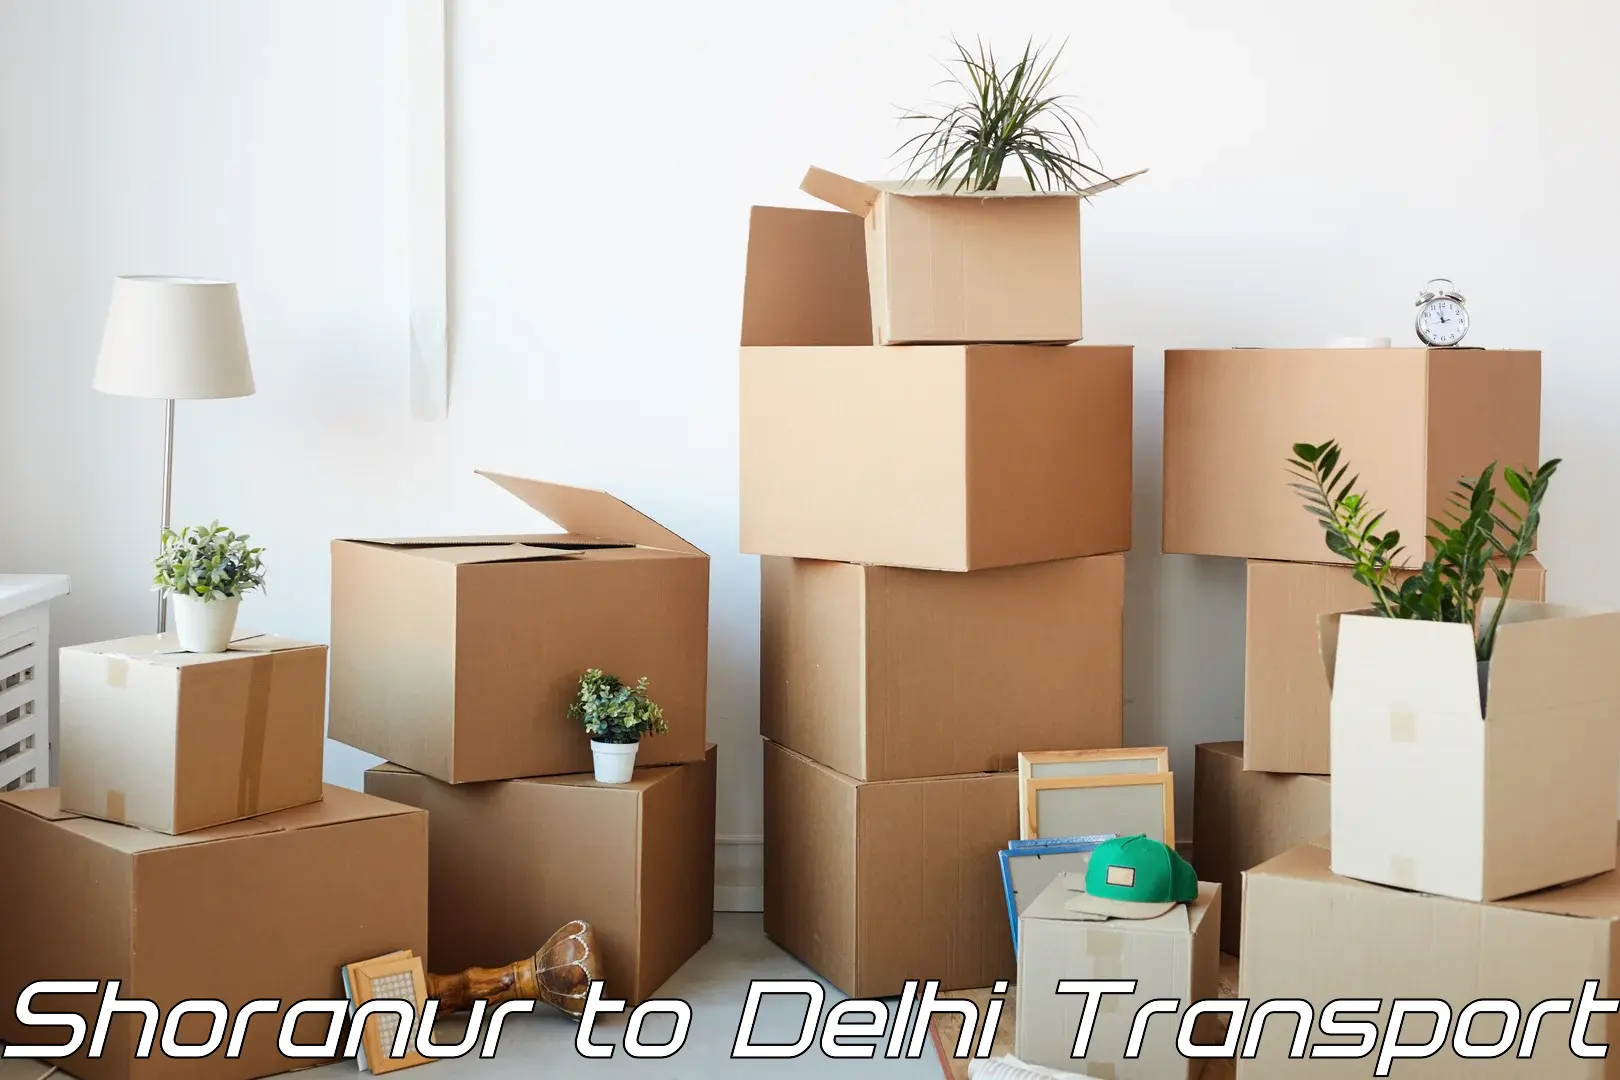 Interstate goods transport Shoranur to IIT Delhi